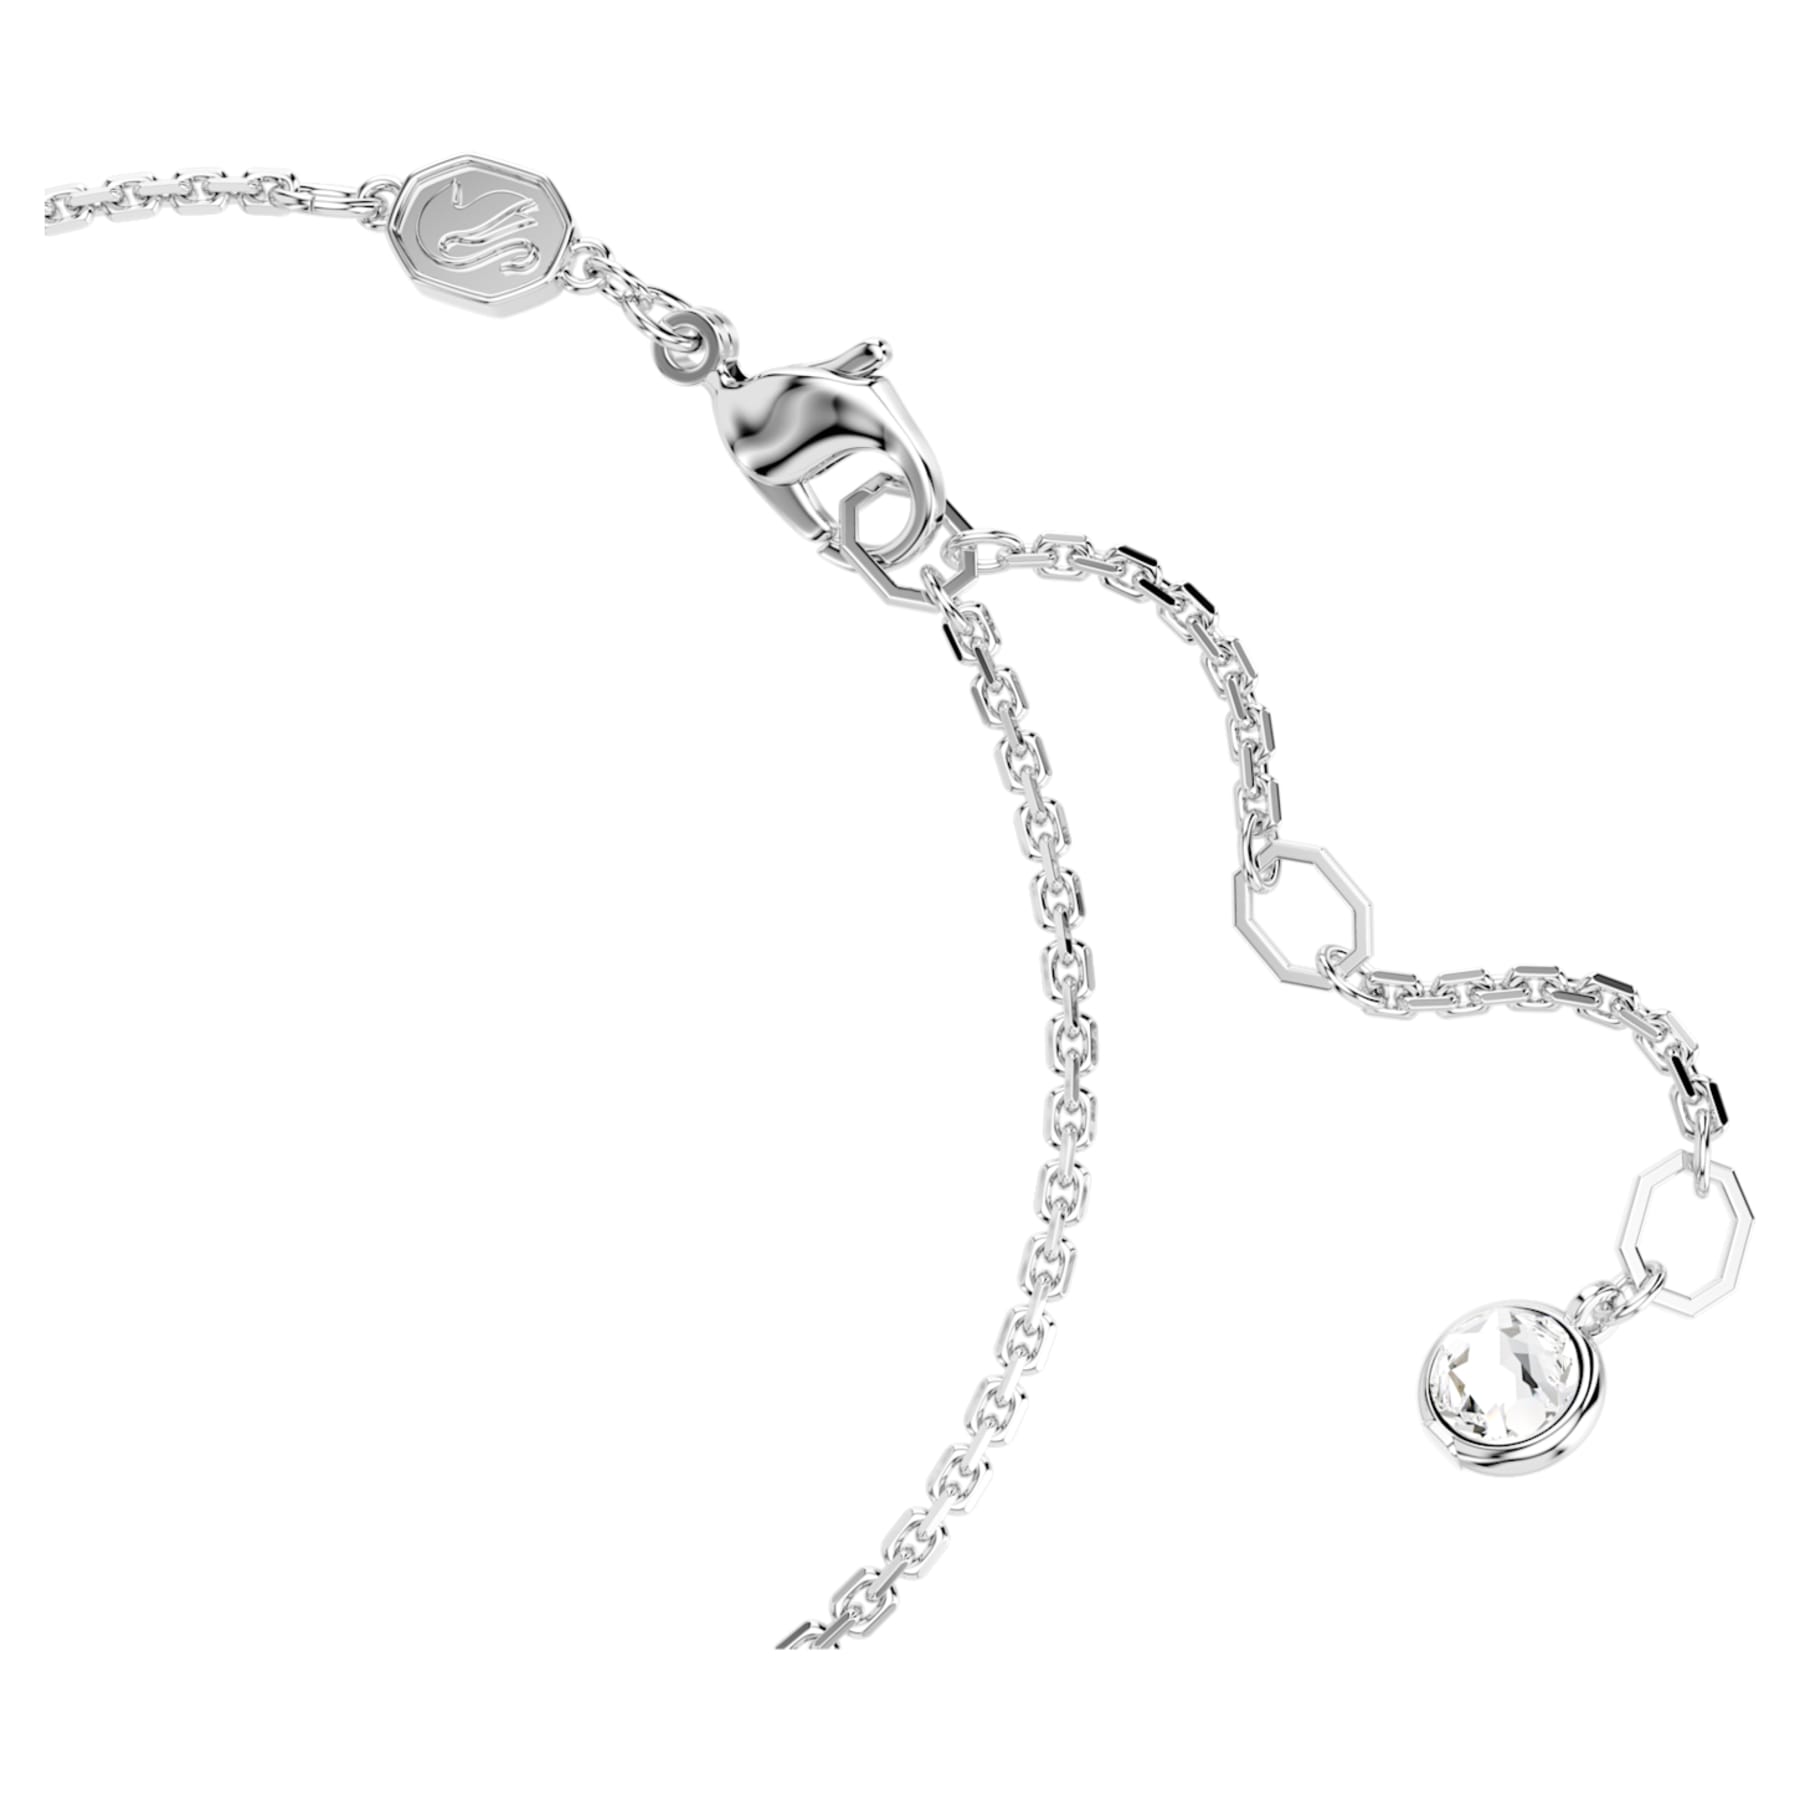 Hyperbel – Weißes Silber – Infinity – Armband – Swarovski